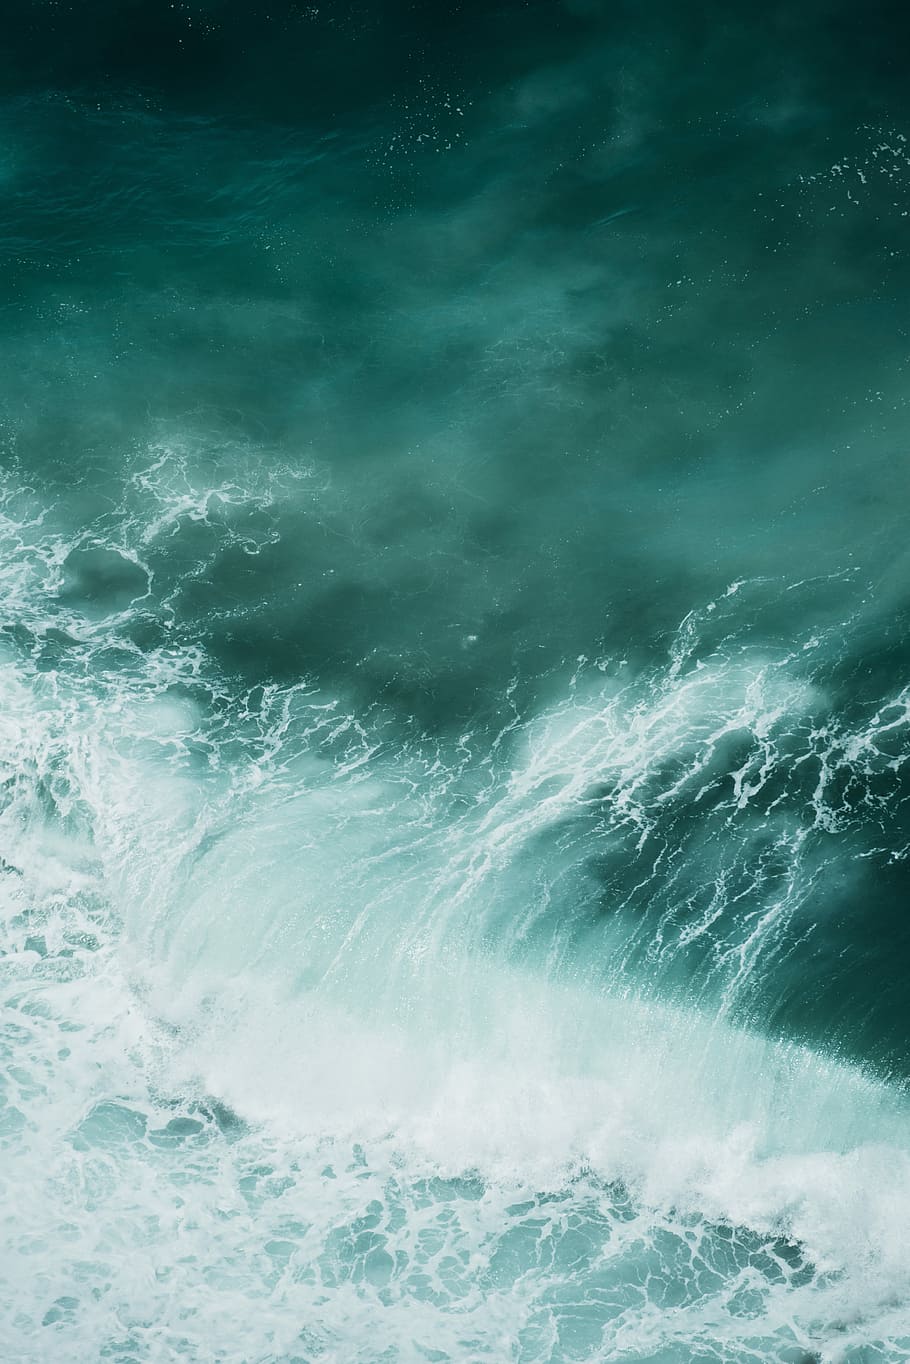 An ocean wave in the Sagres, seawaves painting, aerial, aerial view, HD wallpaper